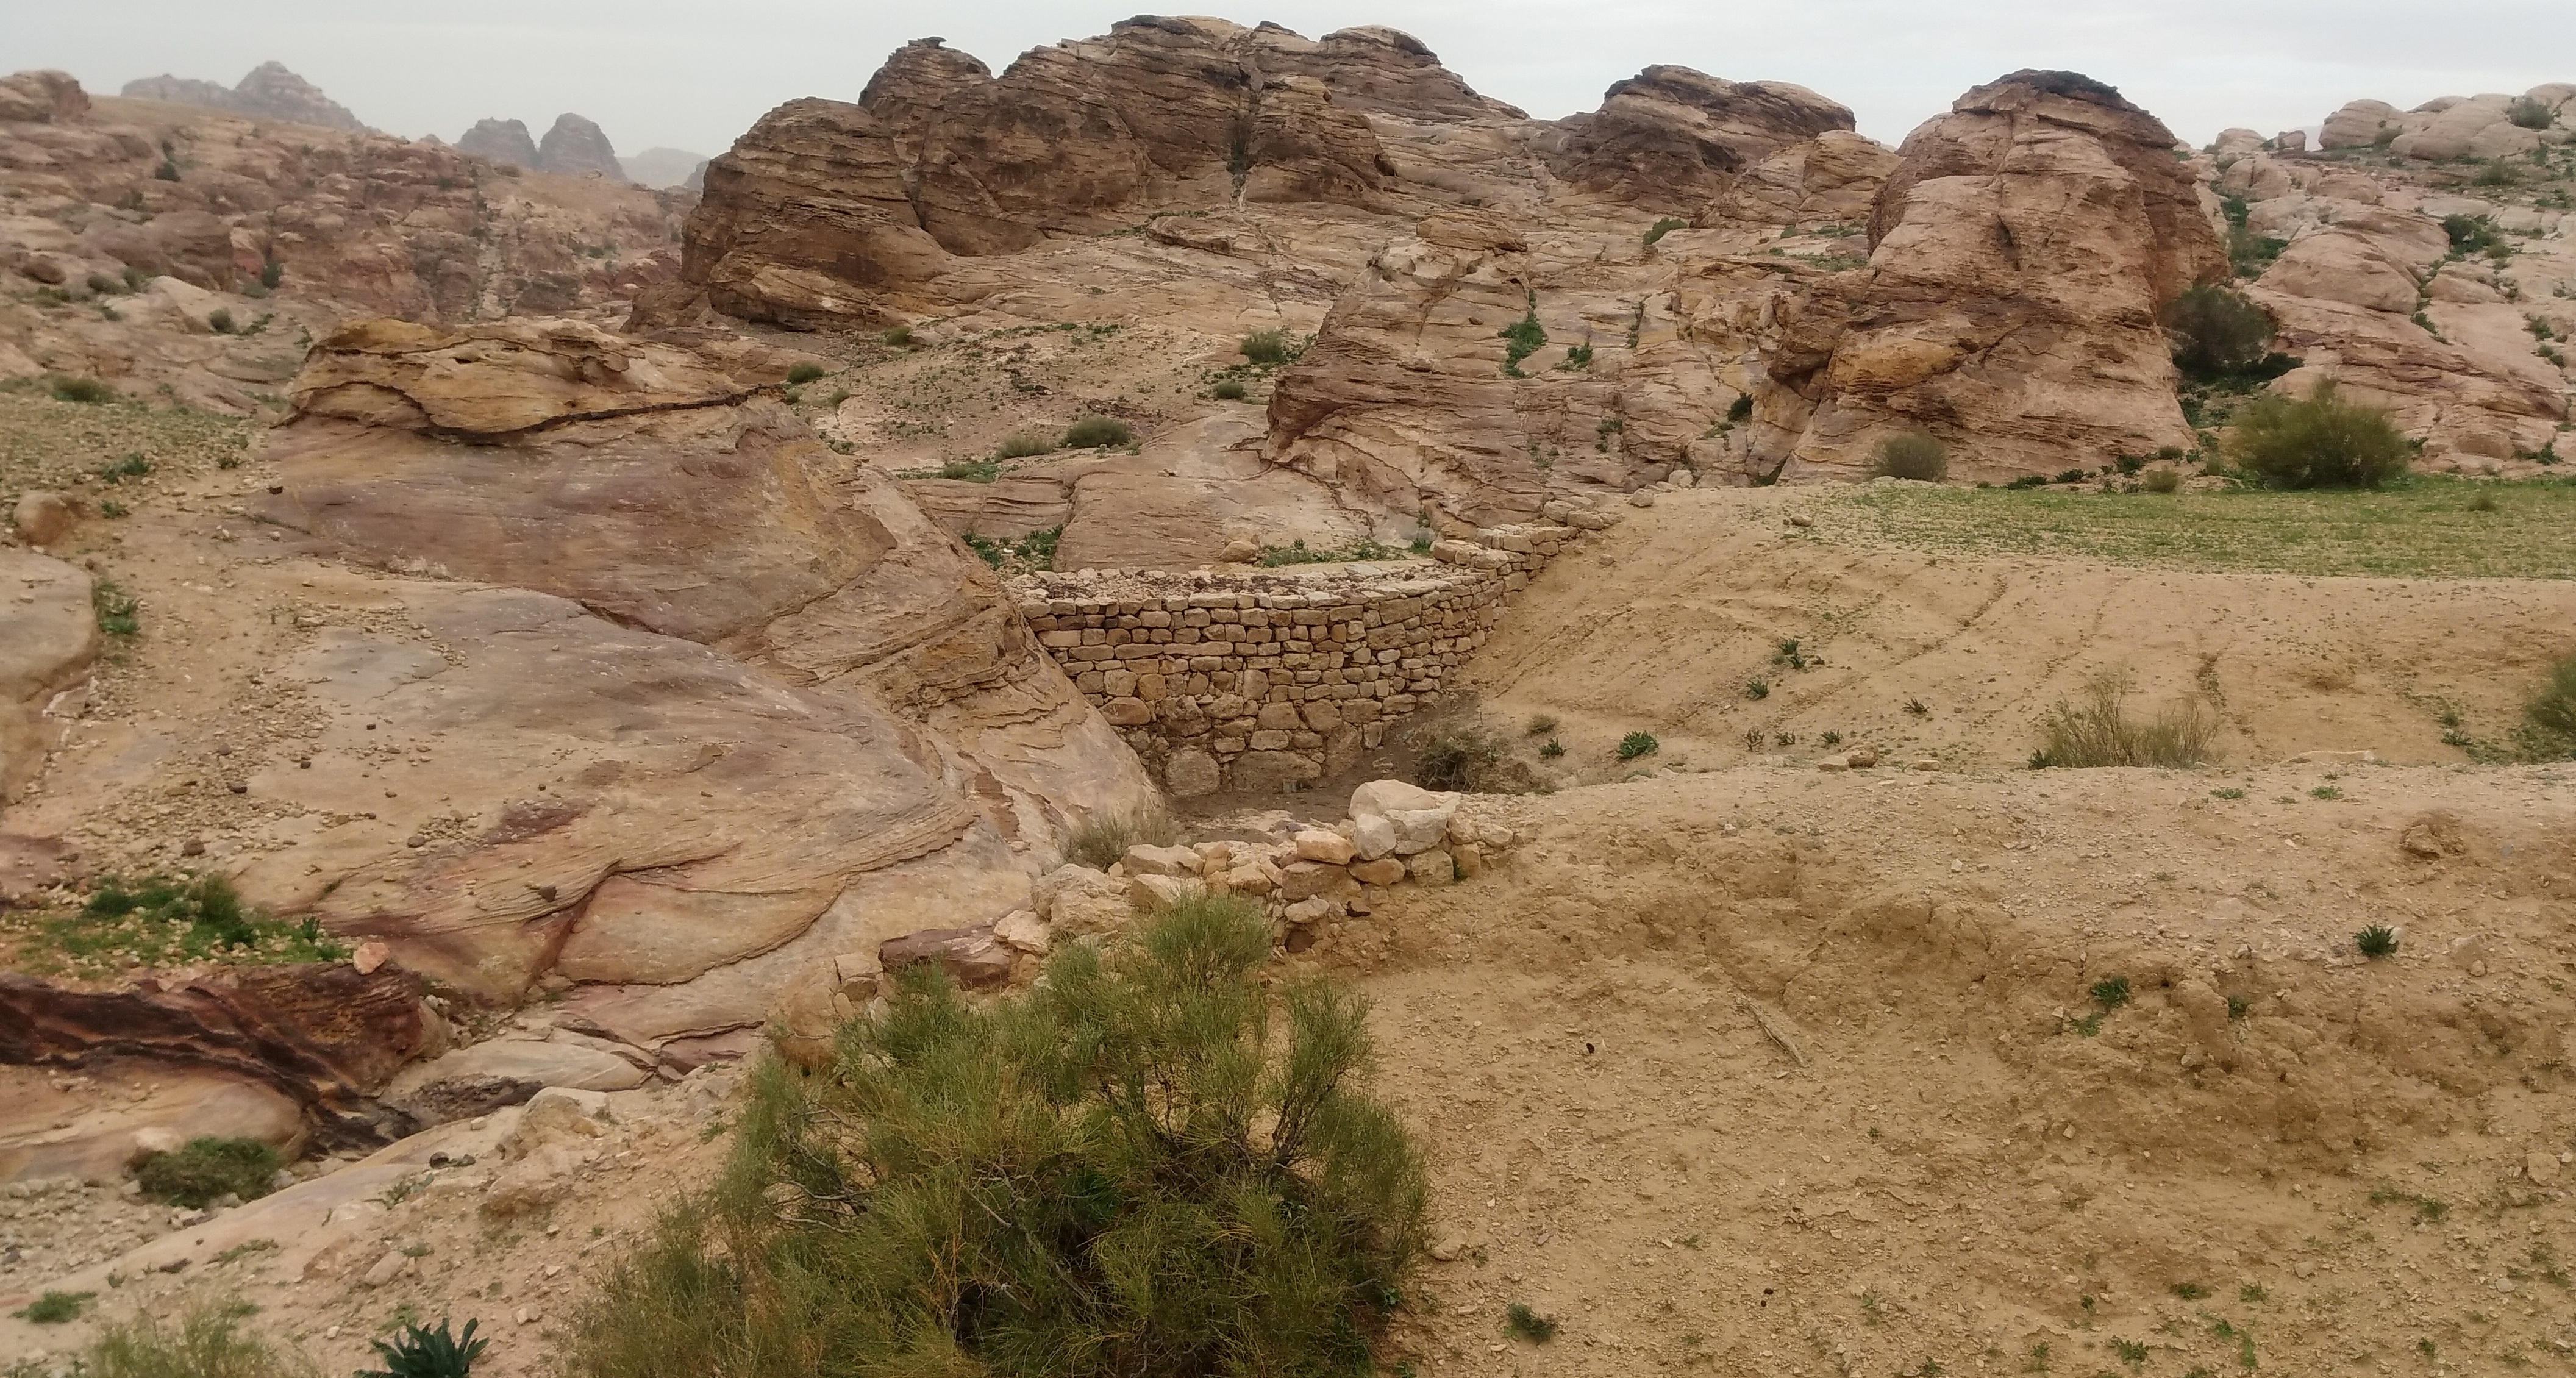 Image 1. Restored historical dams in Wadi Musa in Petra, Jordan.